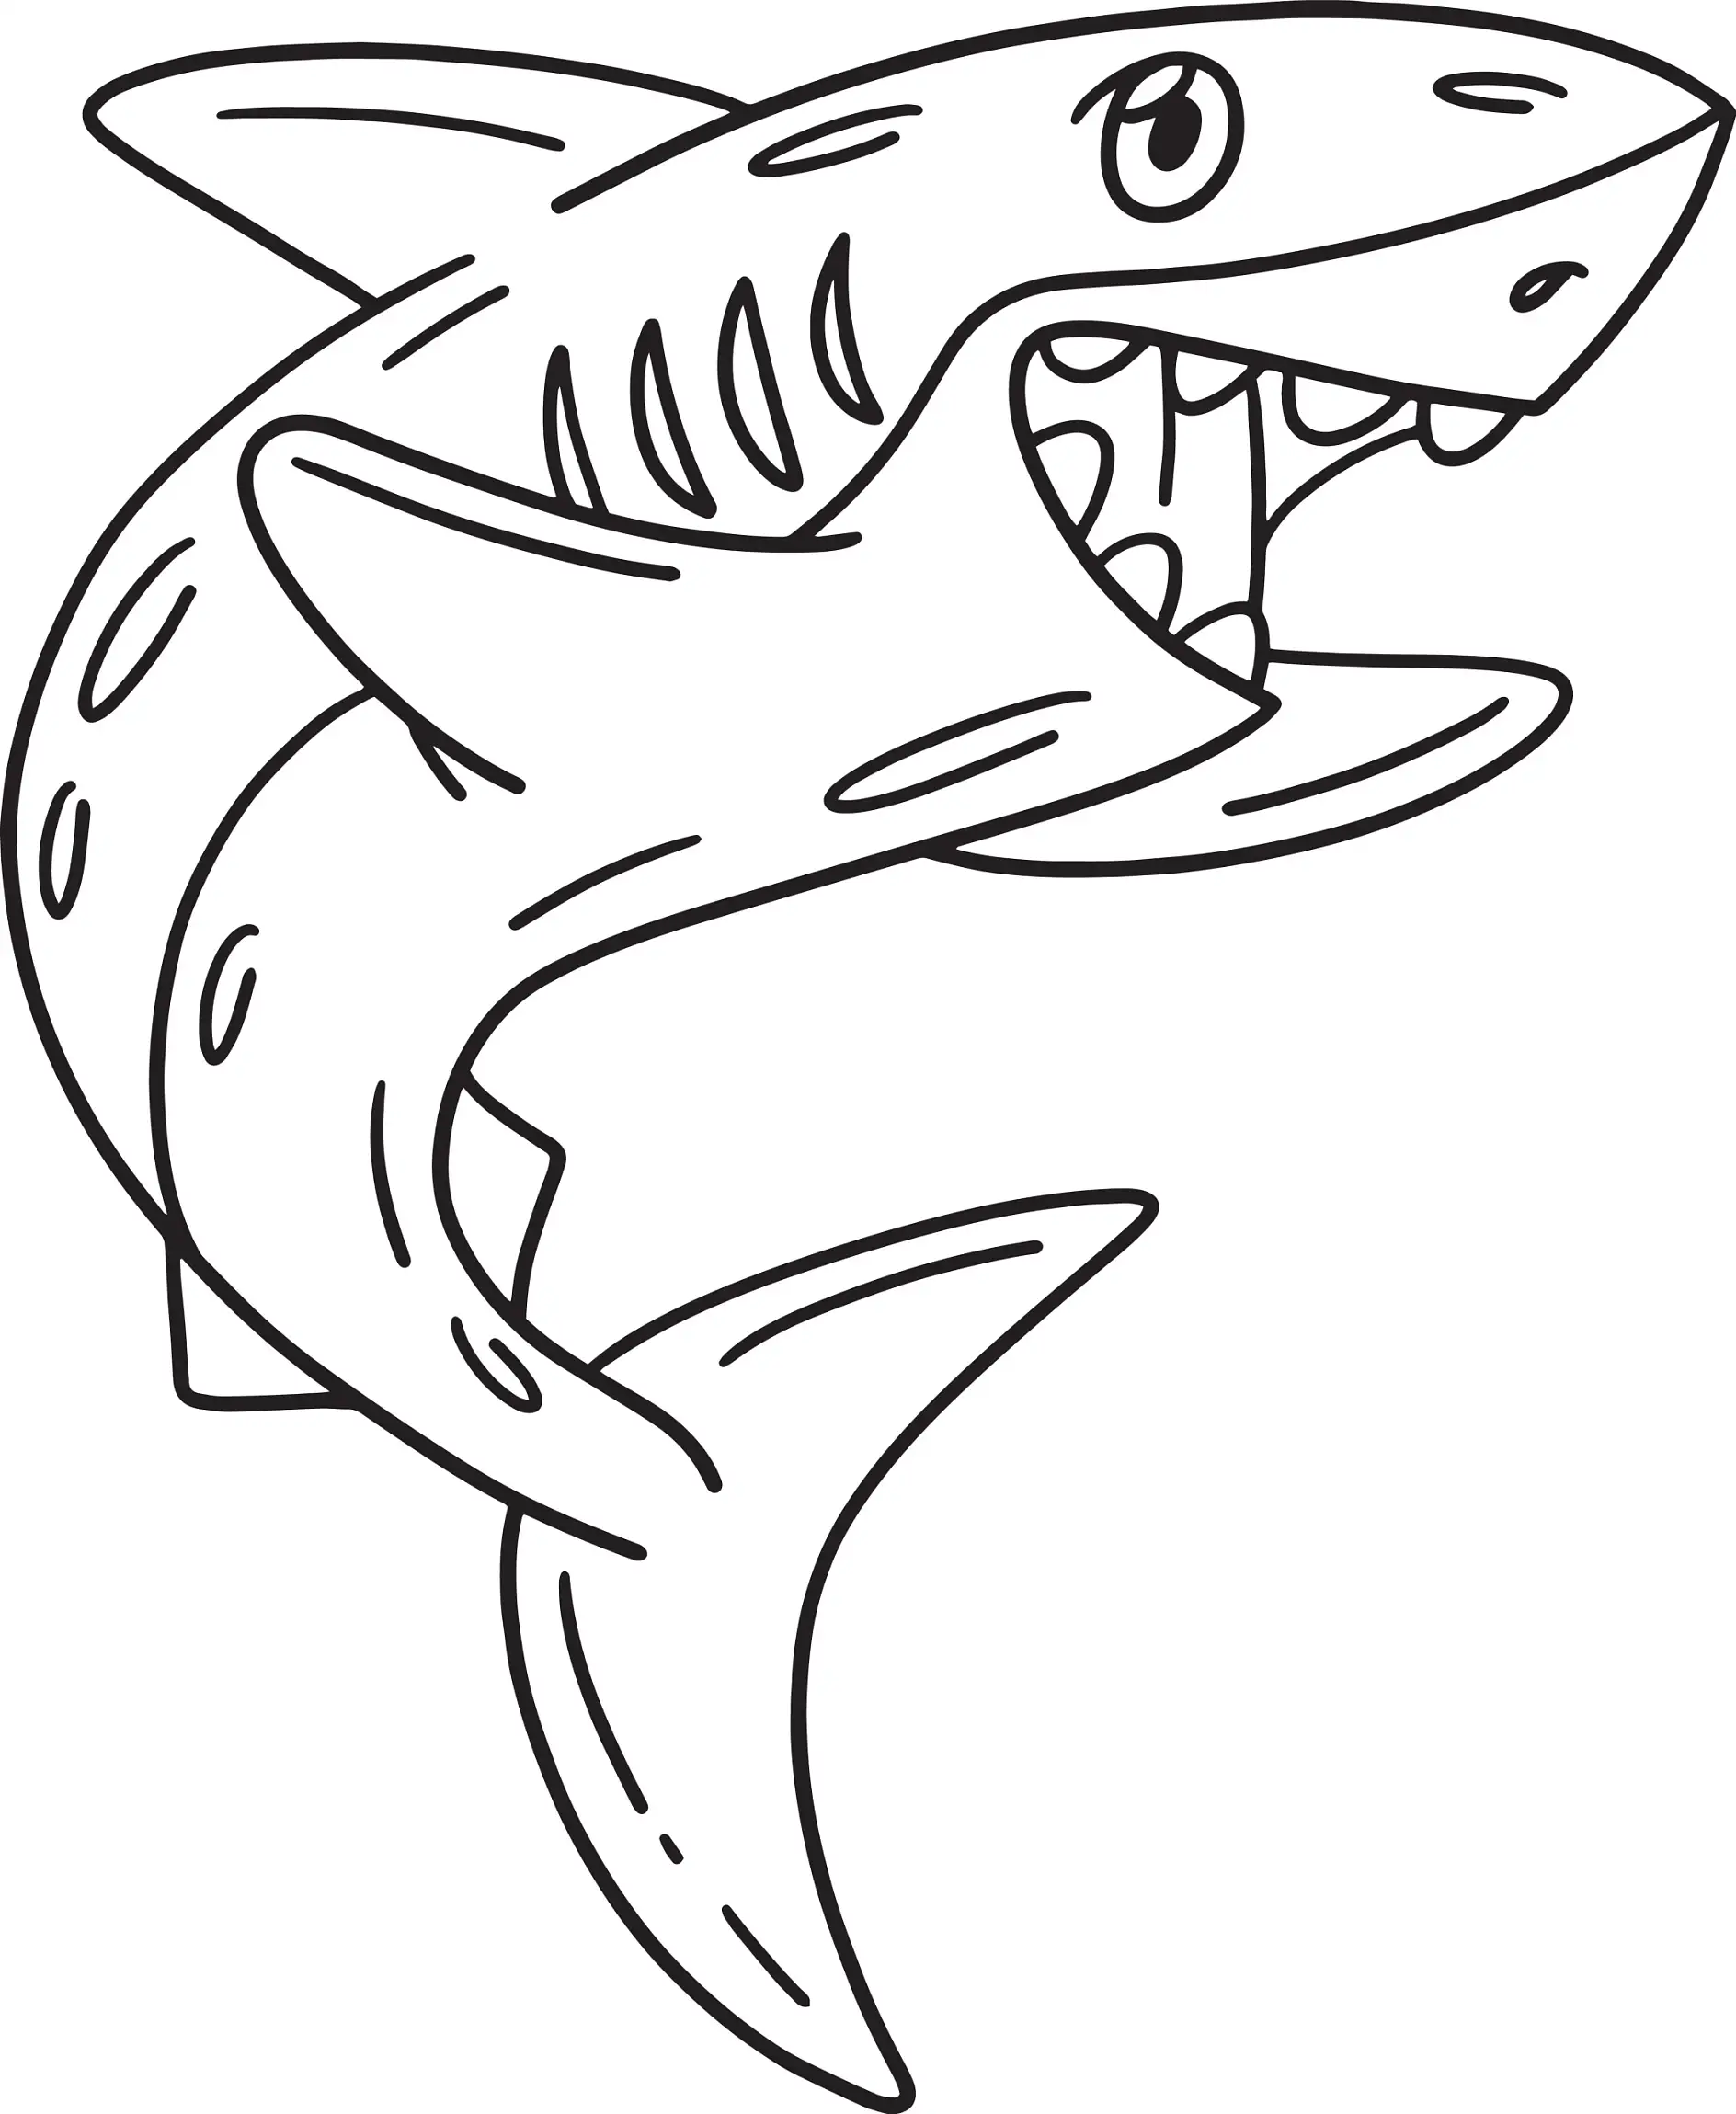 Ausmalbild Hai mit offener Schnauze